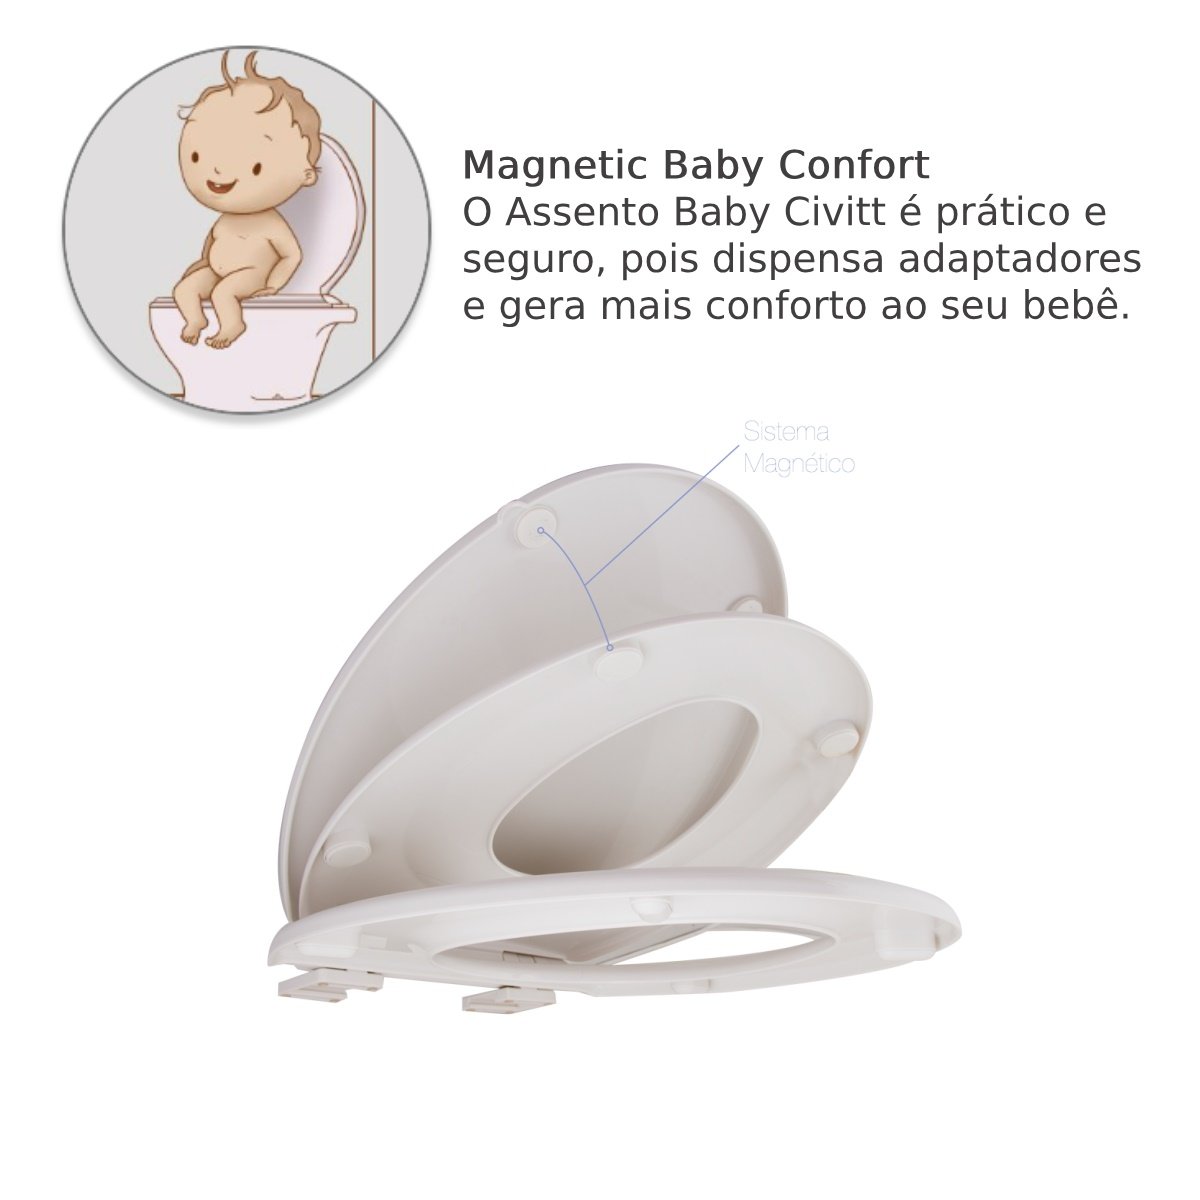 Assento Vaso Sanitário Magnético - Bebê 2 em 1 Infantil e Adulto - 7